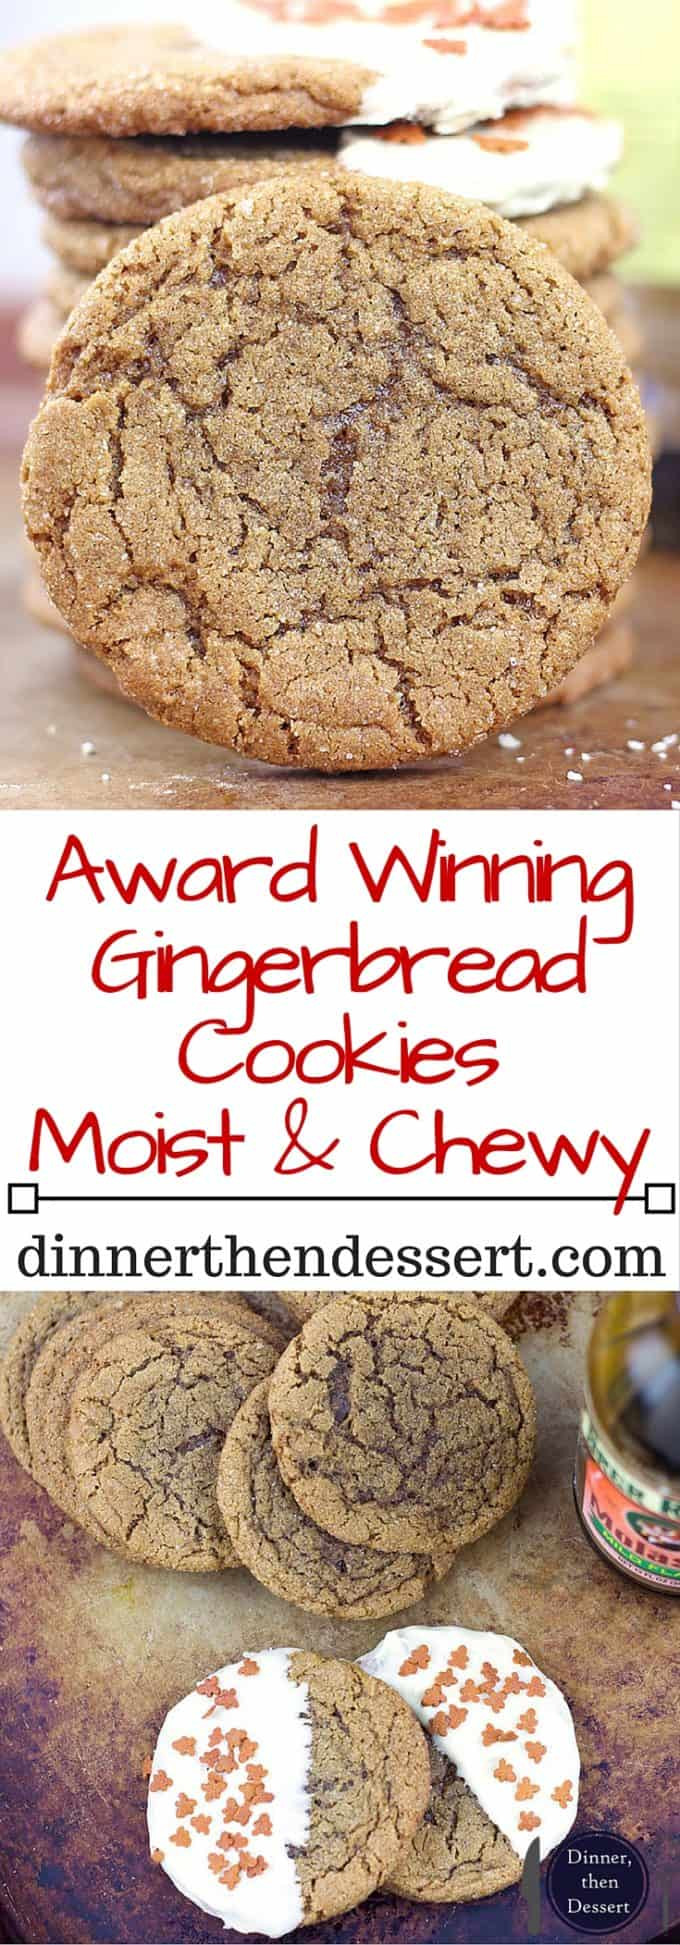 Award Winning Desserts
 Award Winning Gingerbread Cookies Recipe Dinner Then Dessert